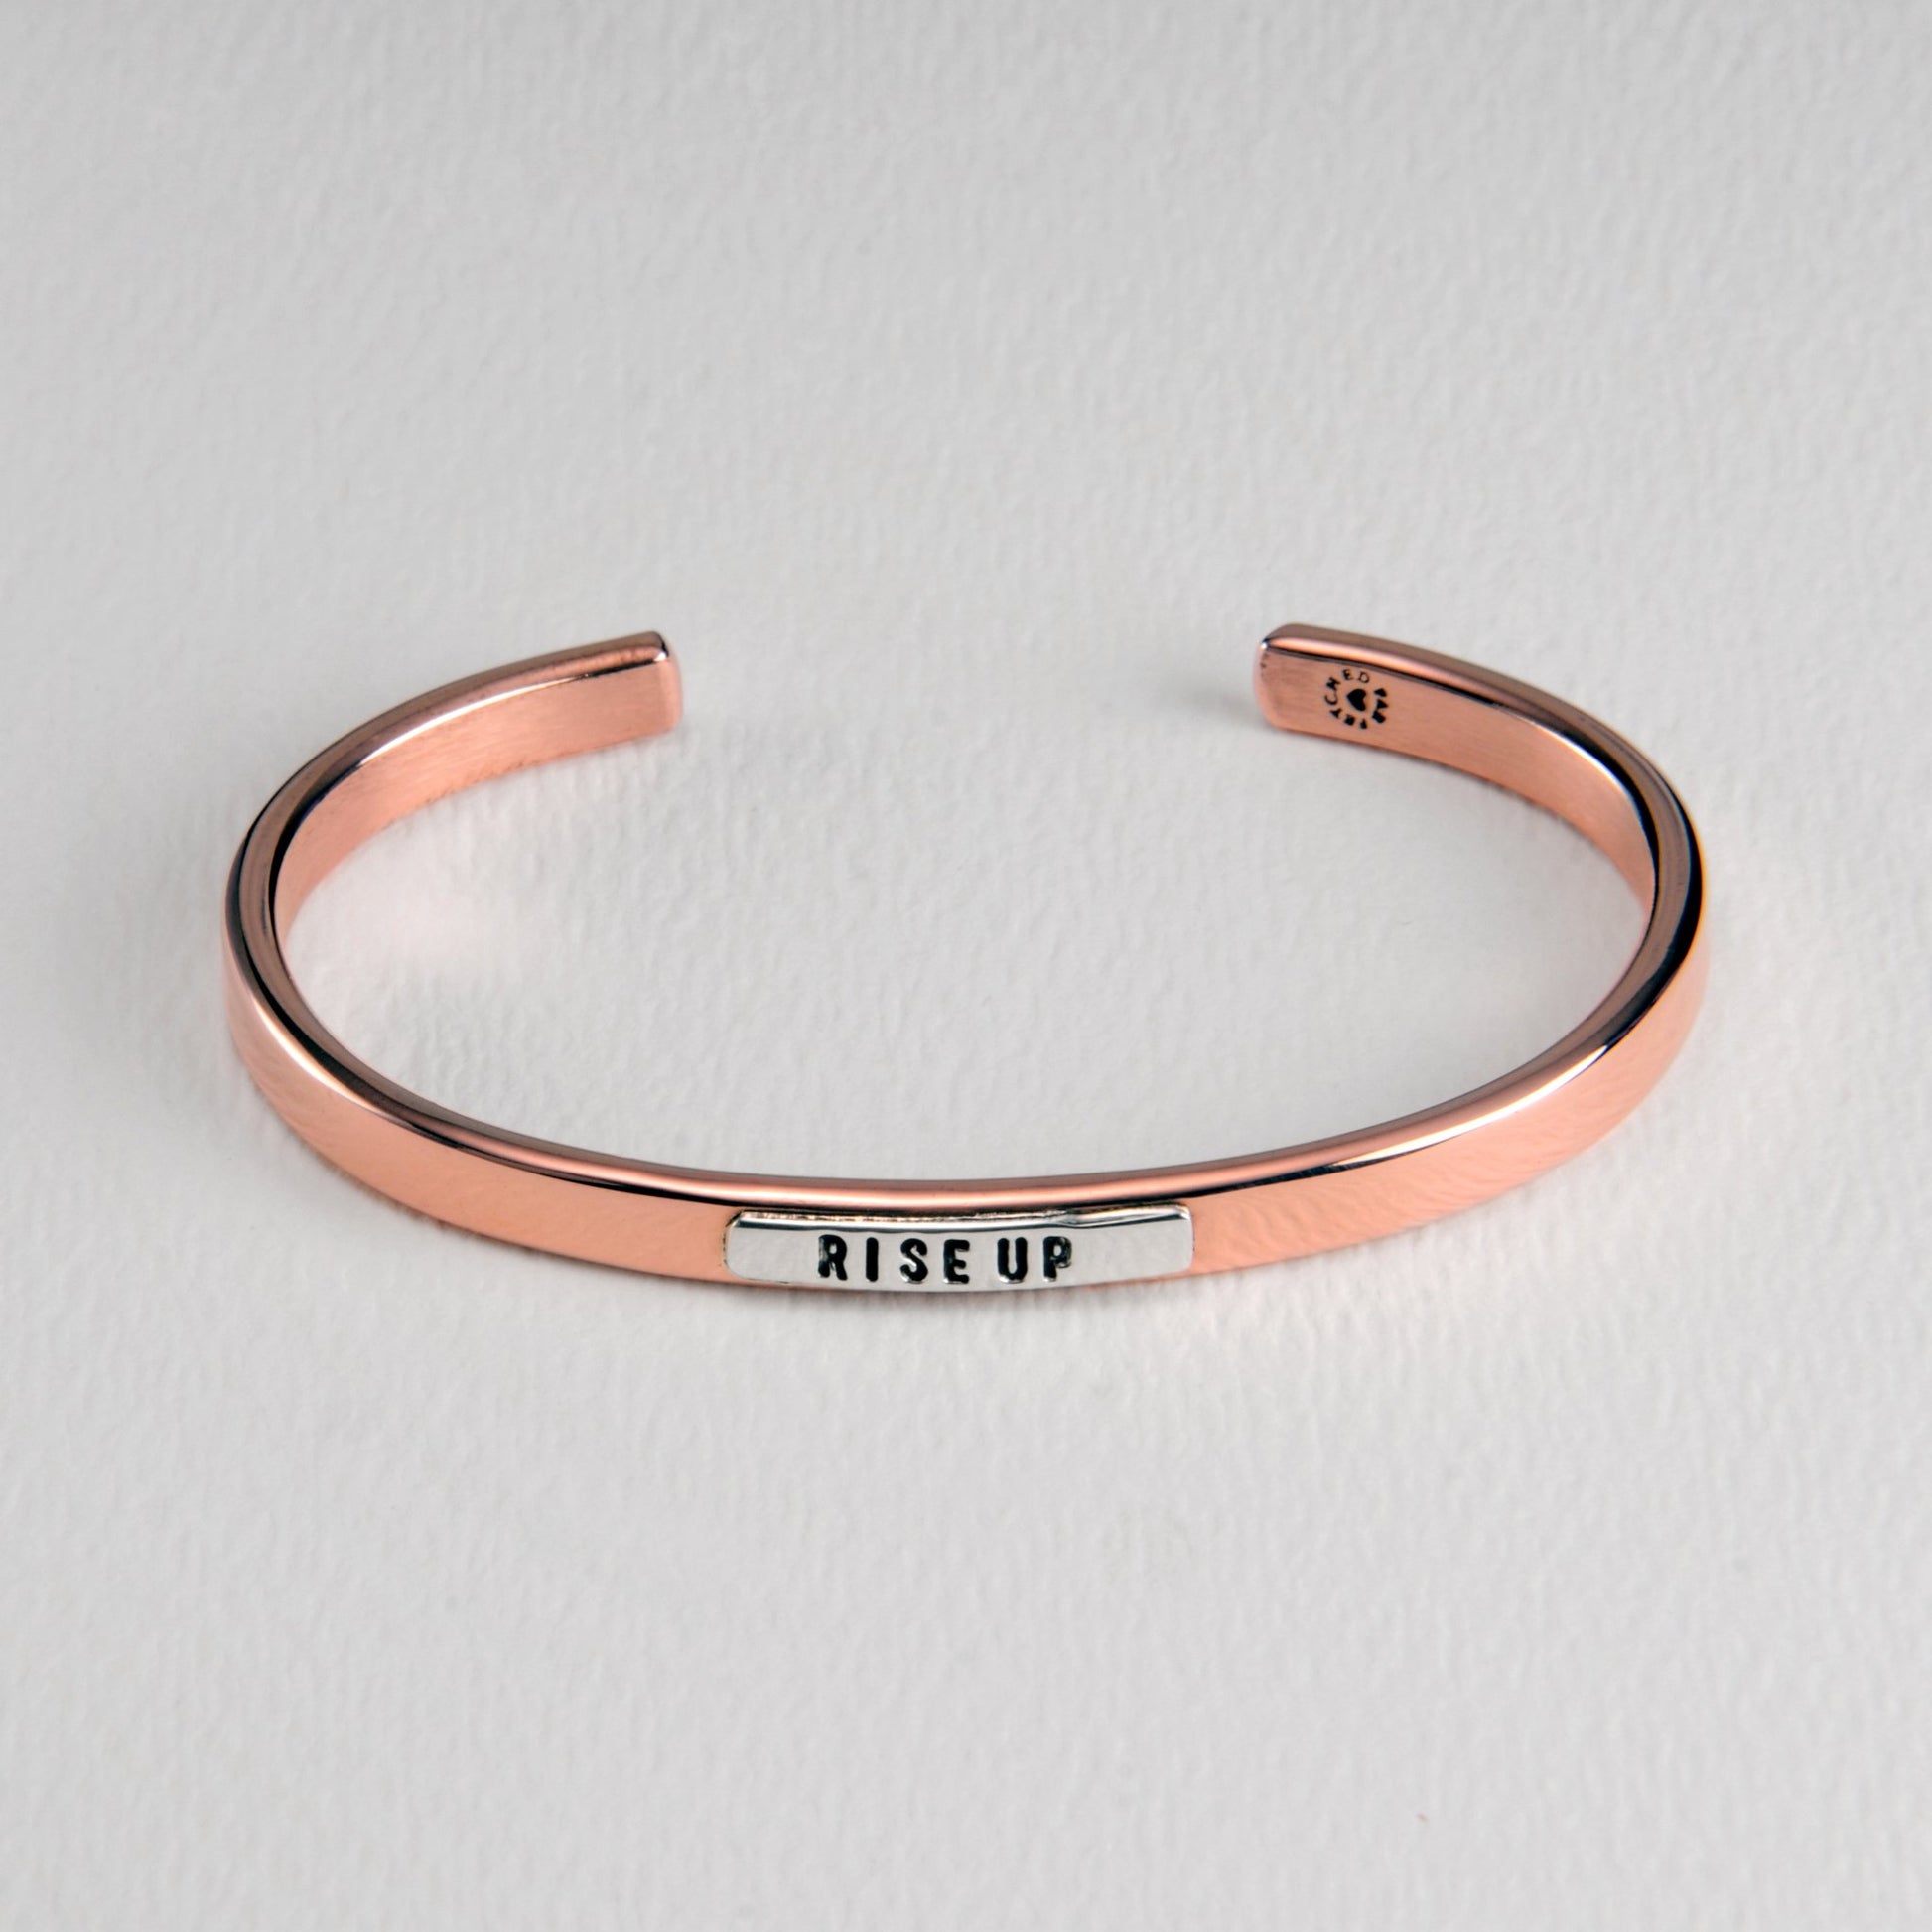 Rise Up Sterling & Copper Cuff Bracelet